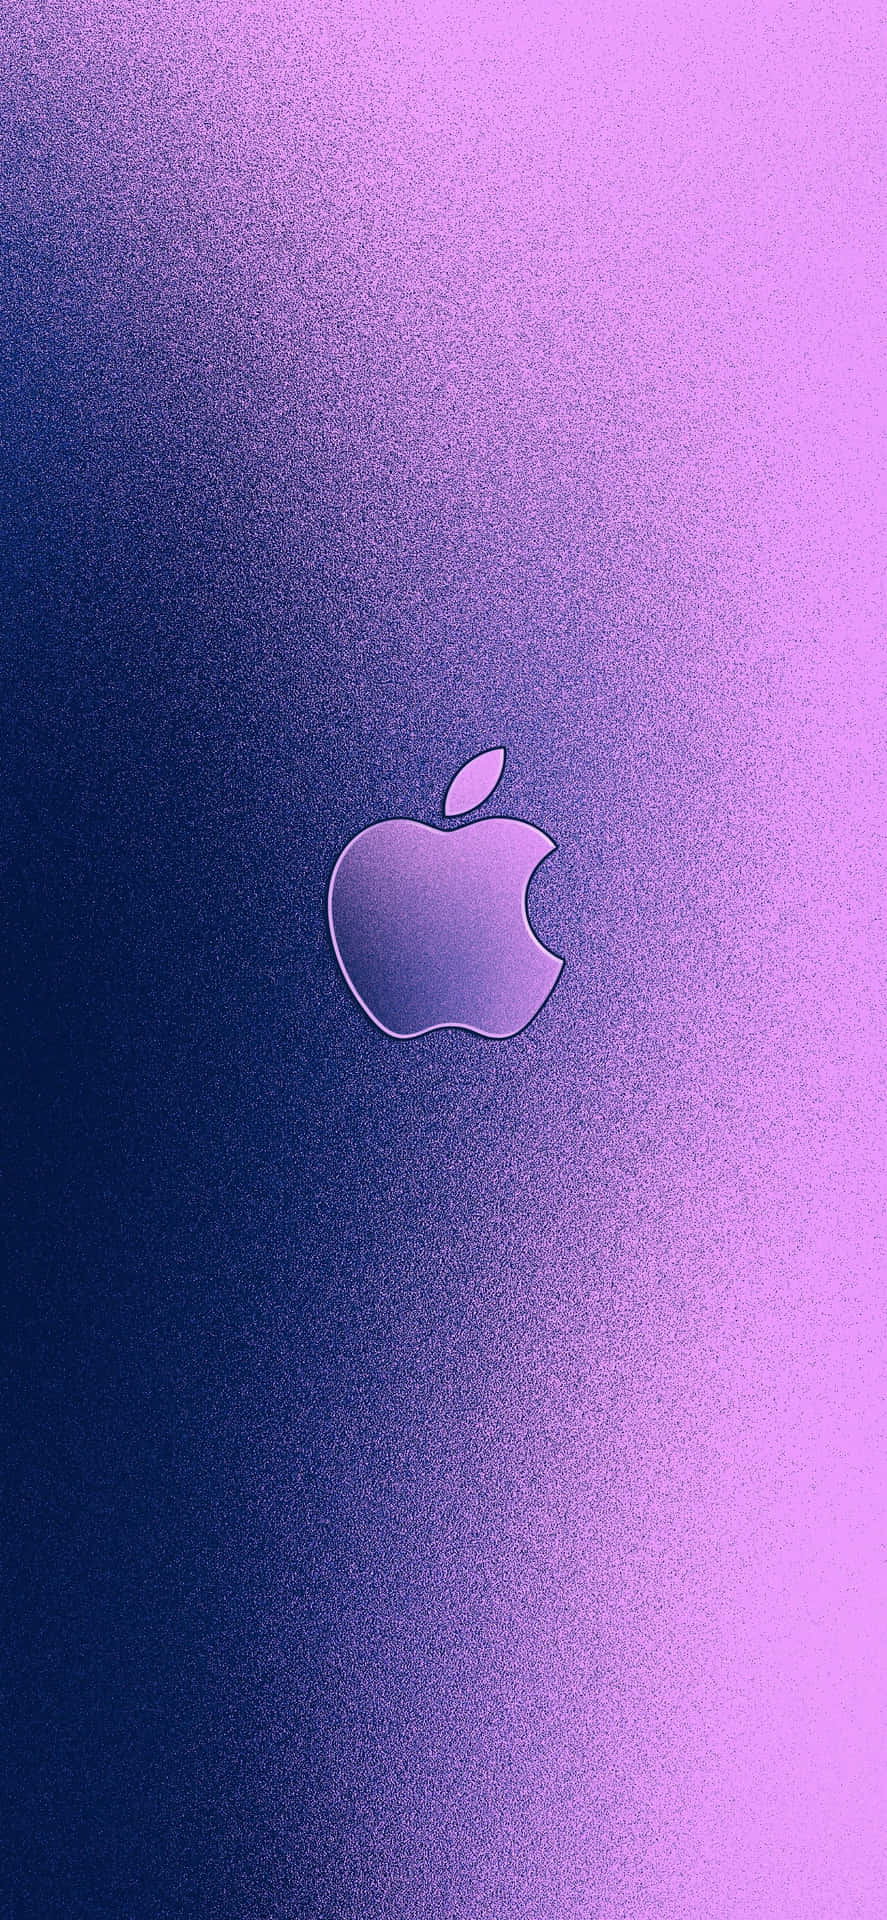 SEt Detaljeret Kig på Apple Logoet på en iPhone XS. Wallpaper